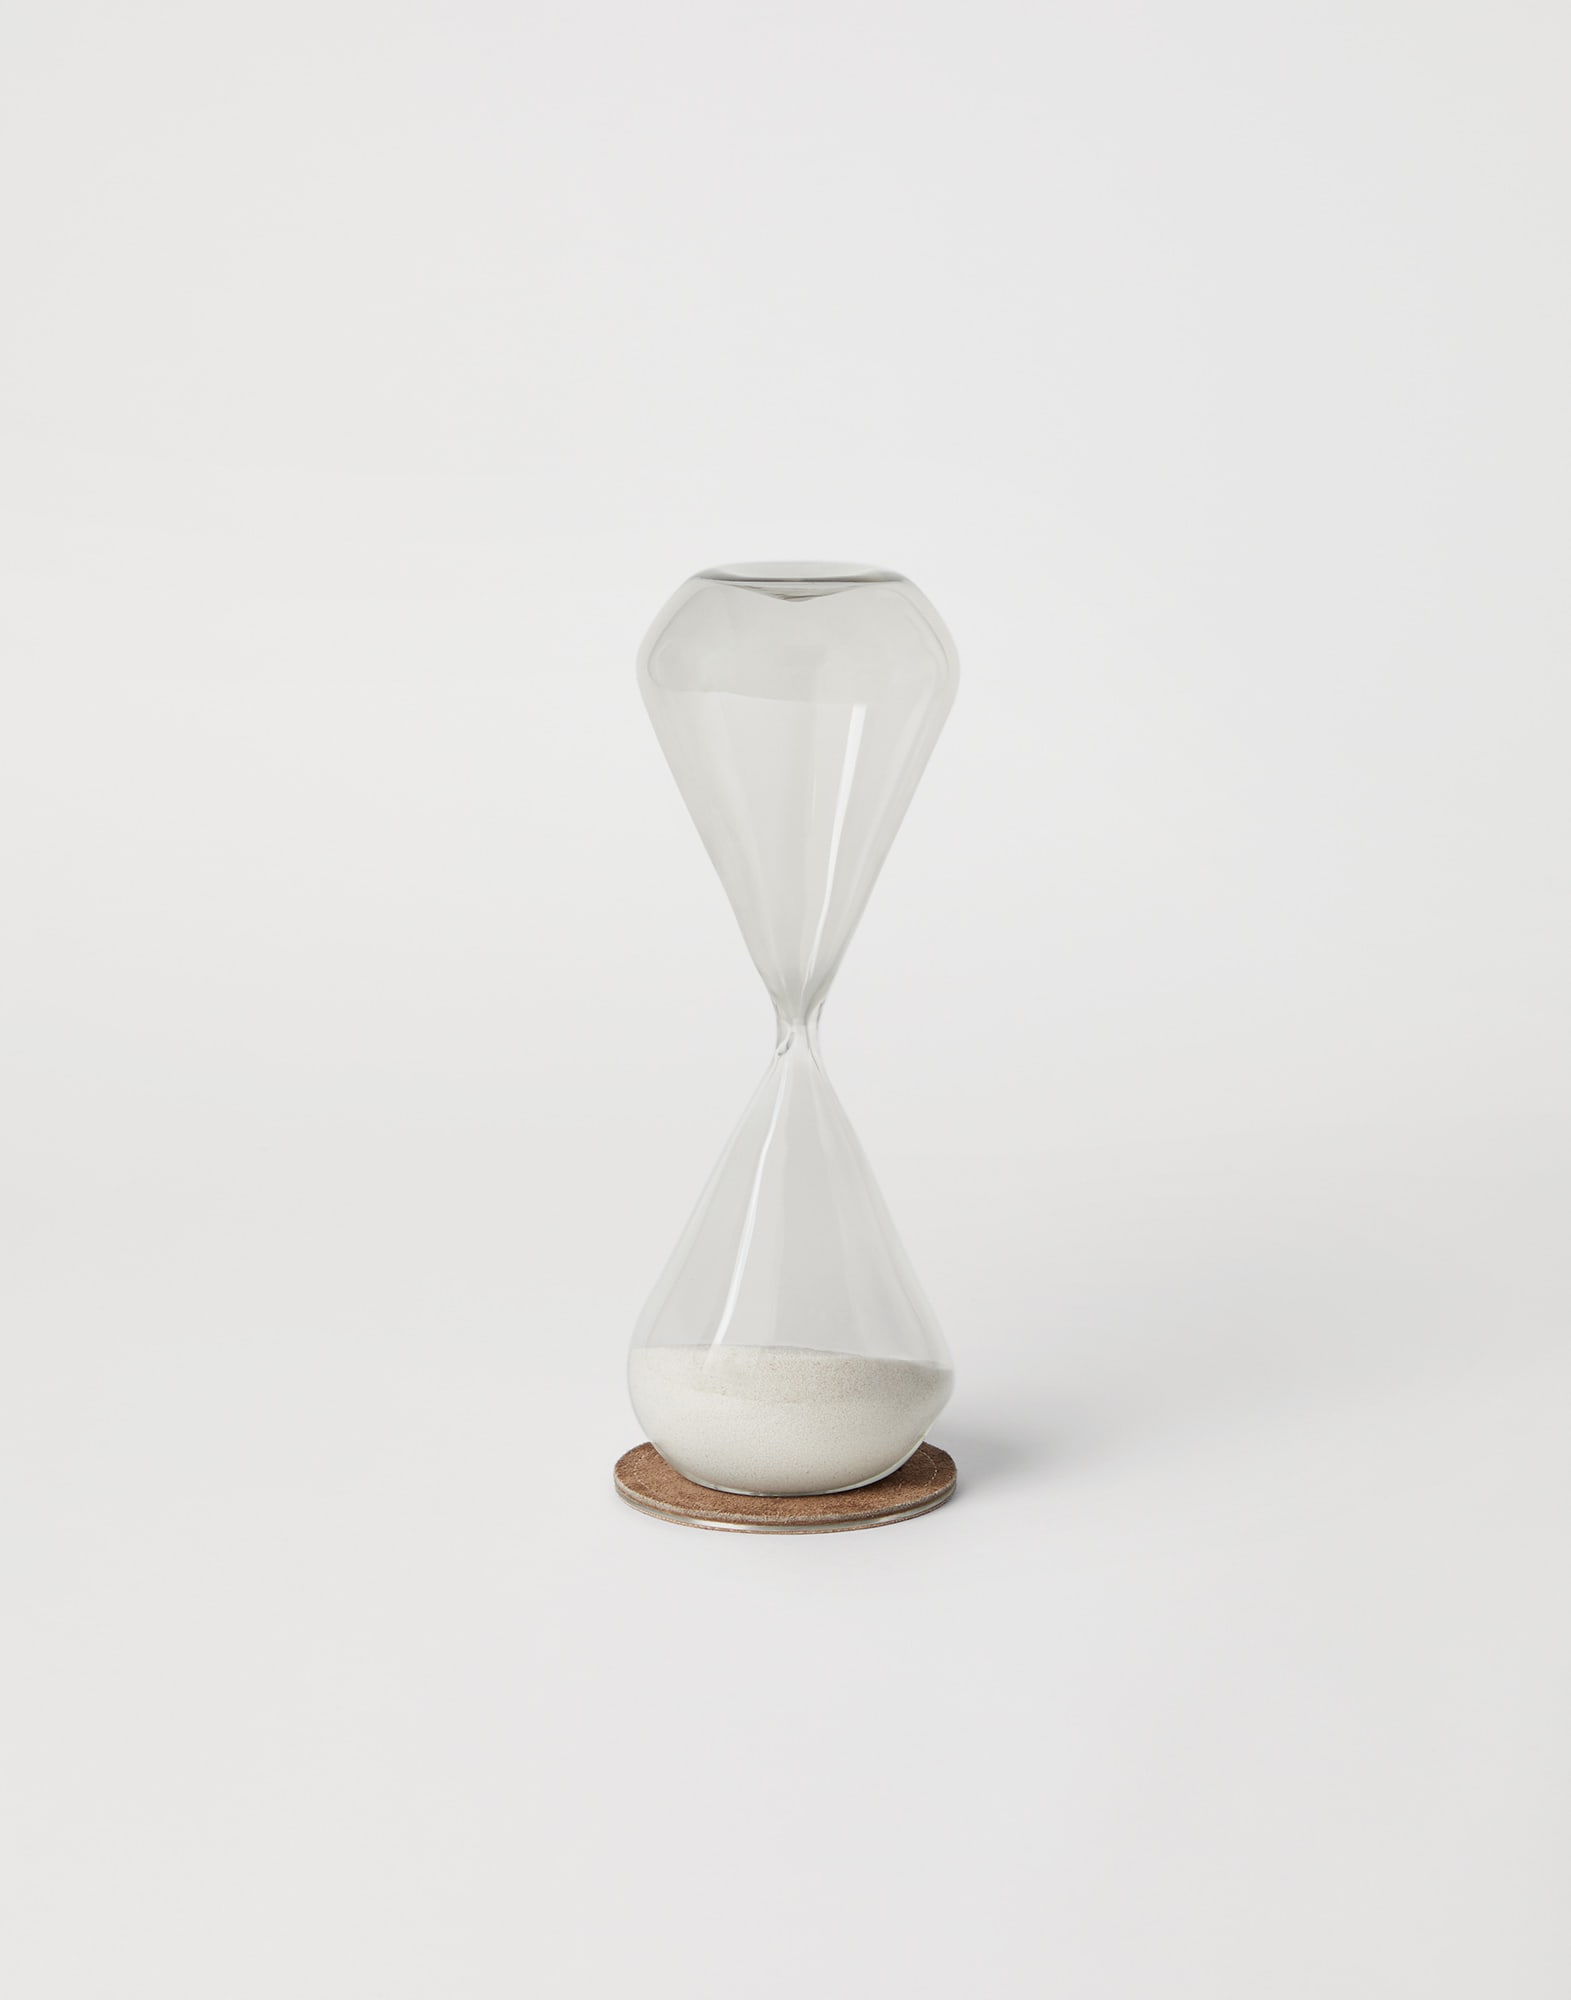 Geometric hourglass White Lifestyle -
                        Brunello Cucinelli
                    